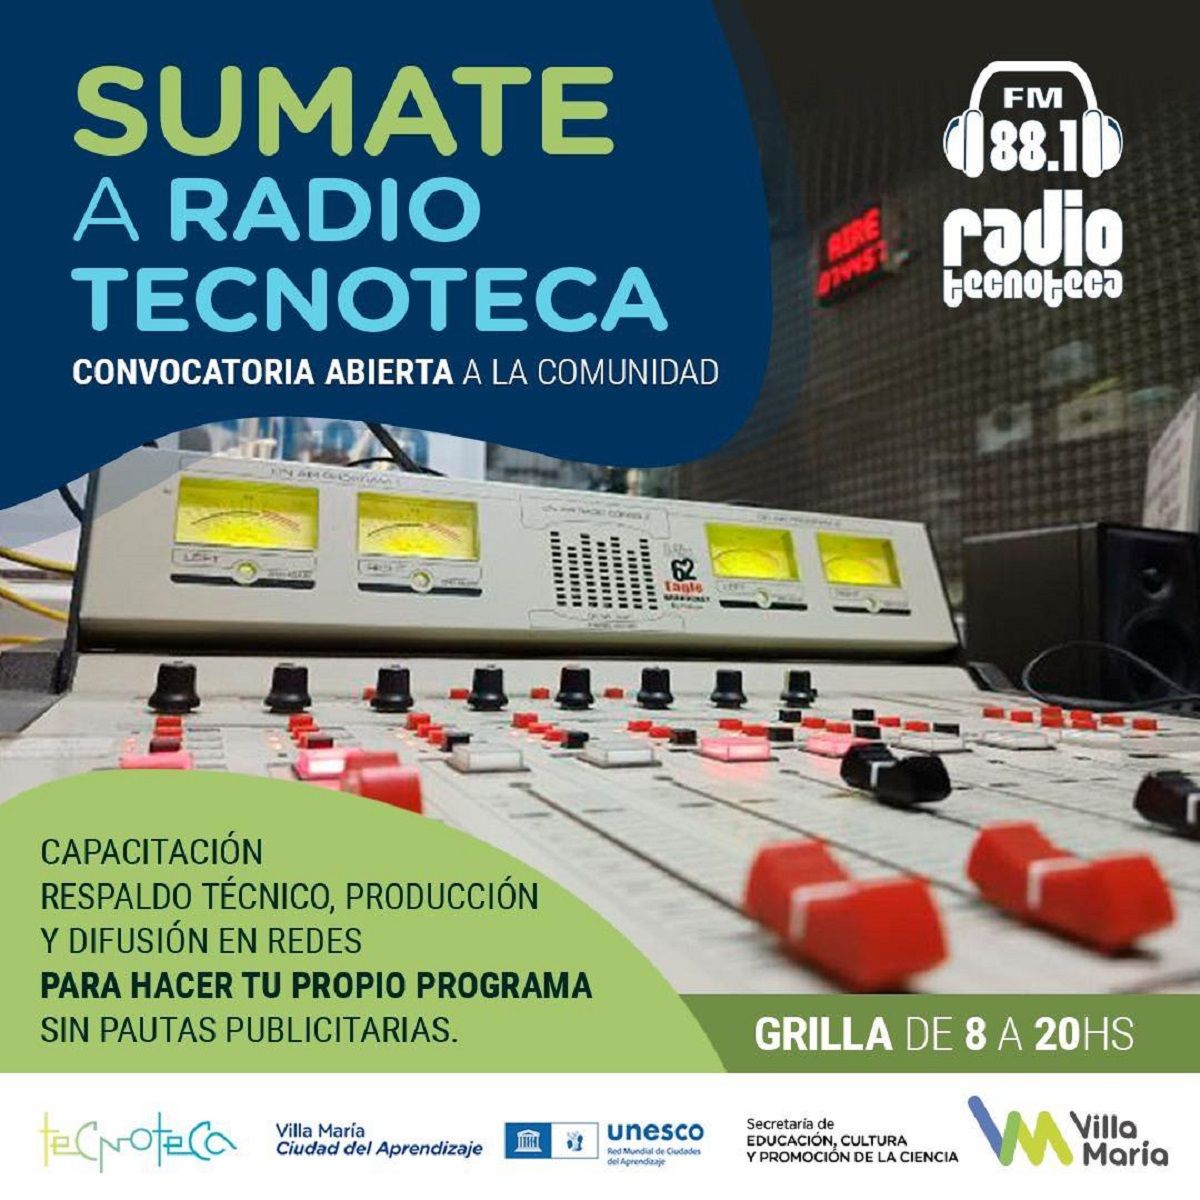 Radio Tecnoteca invita a la comunidad a sumarse con su propio programa